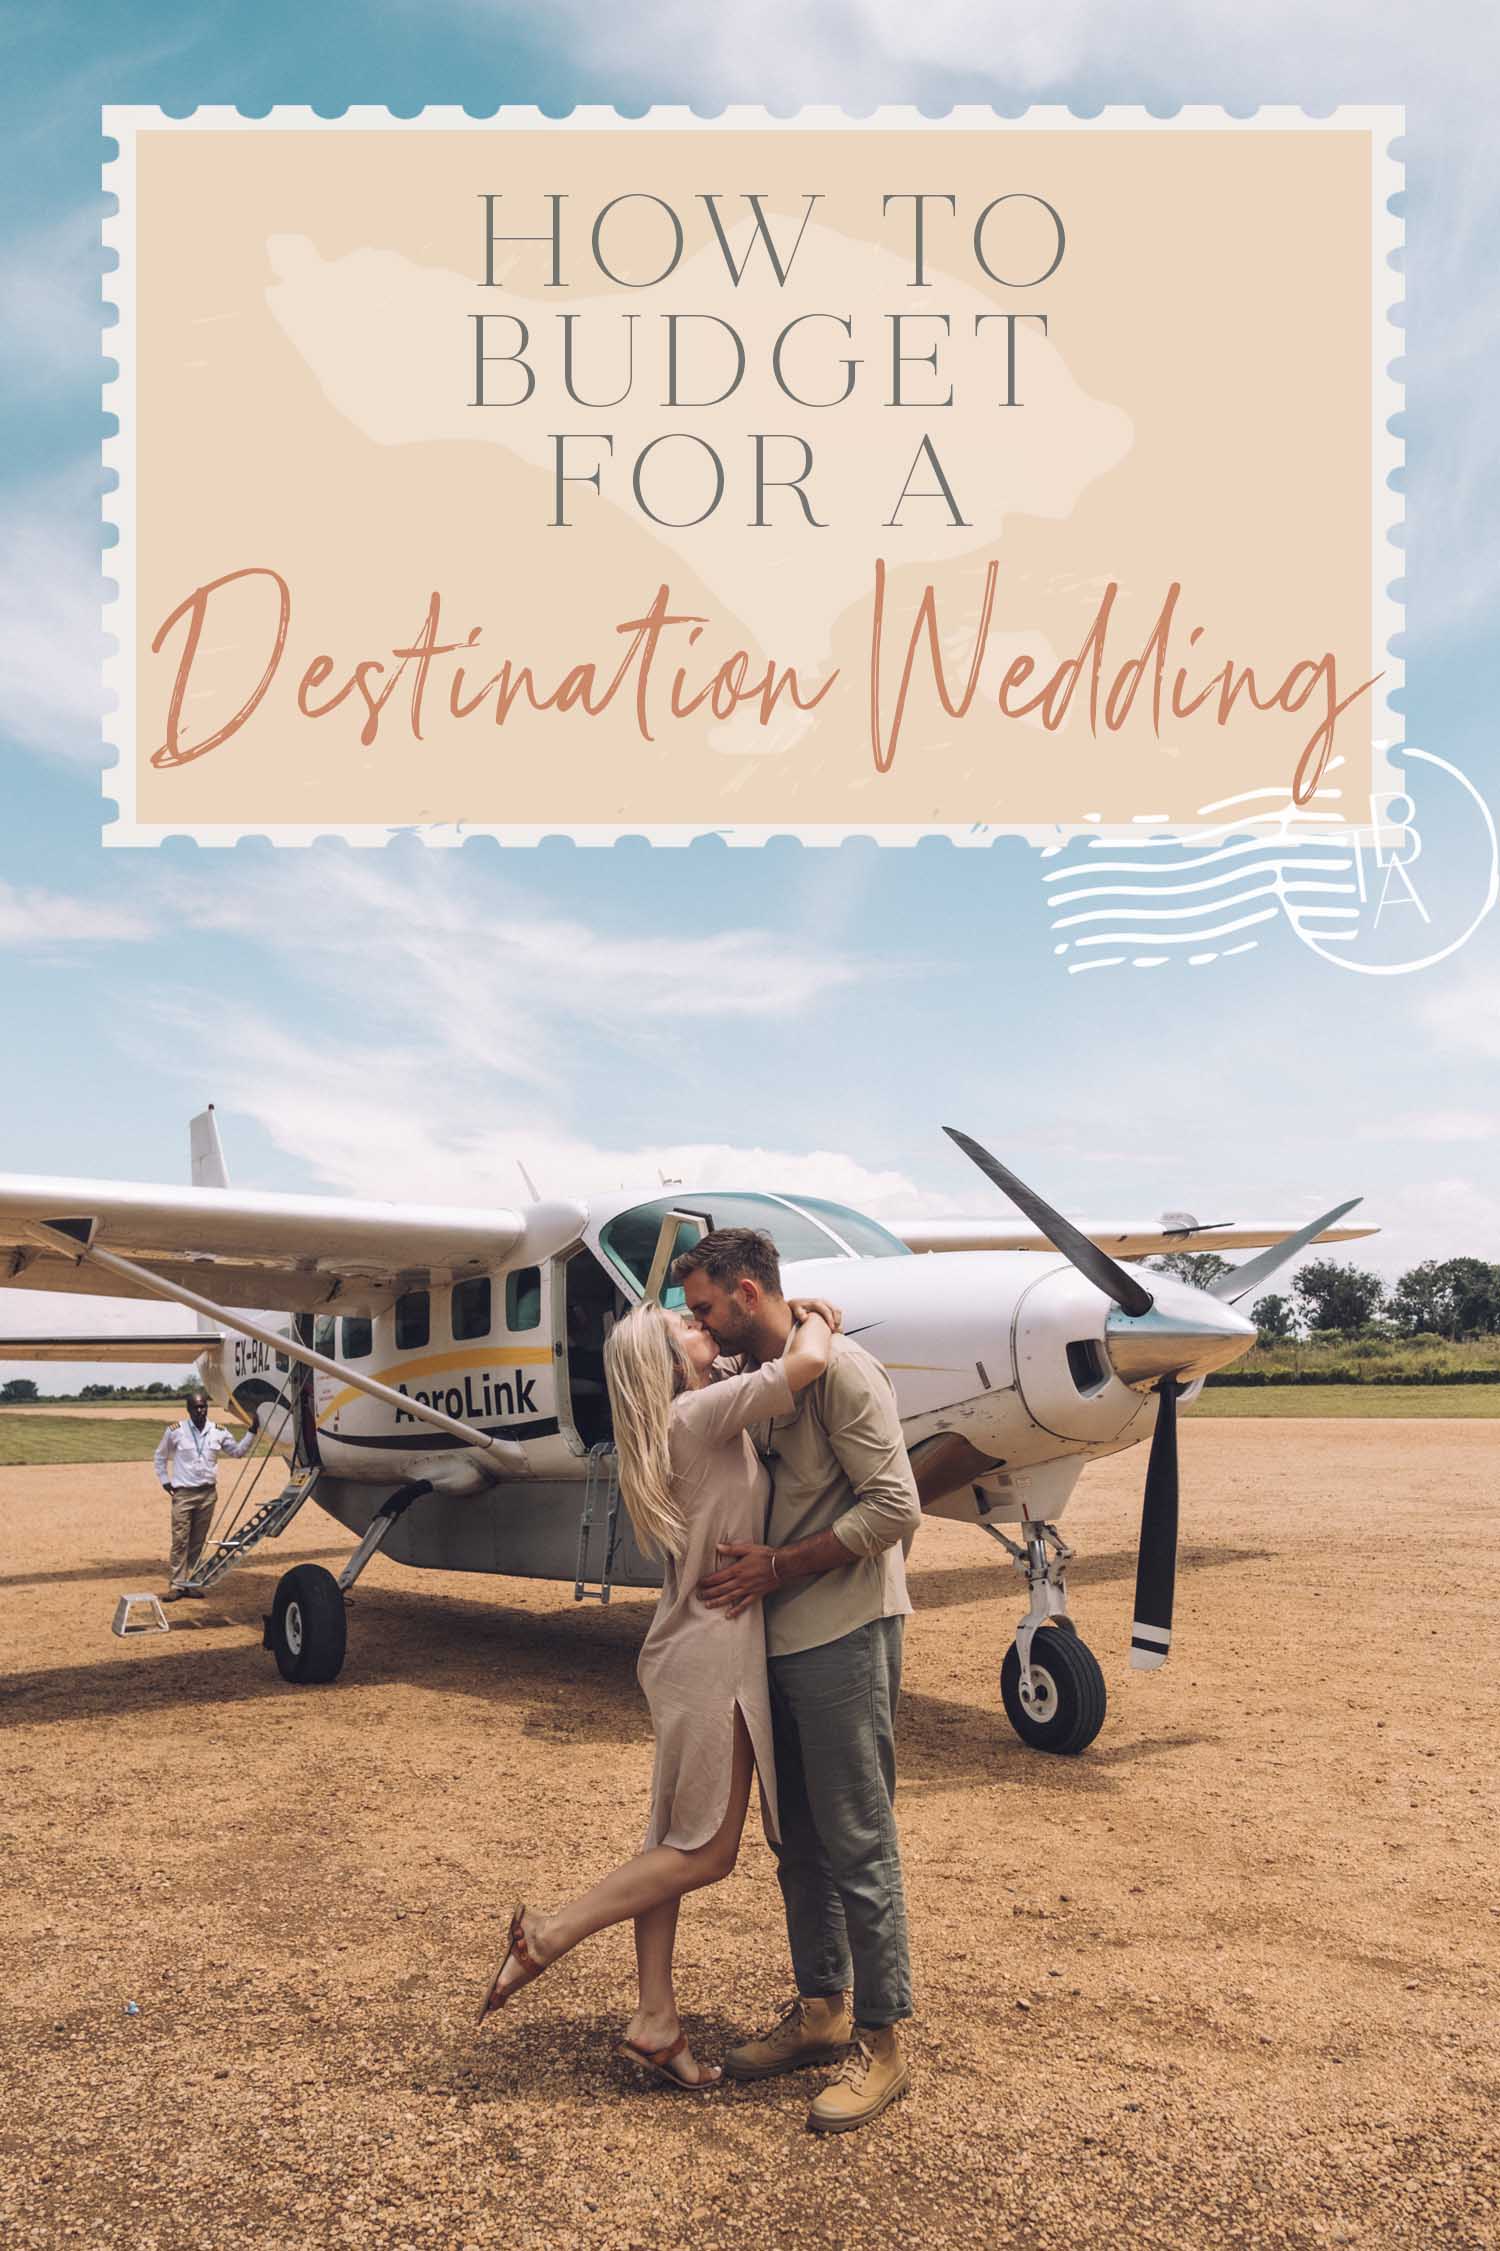 How to Budget for a Destination Wedding